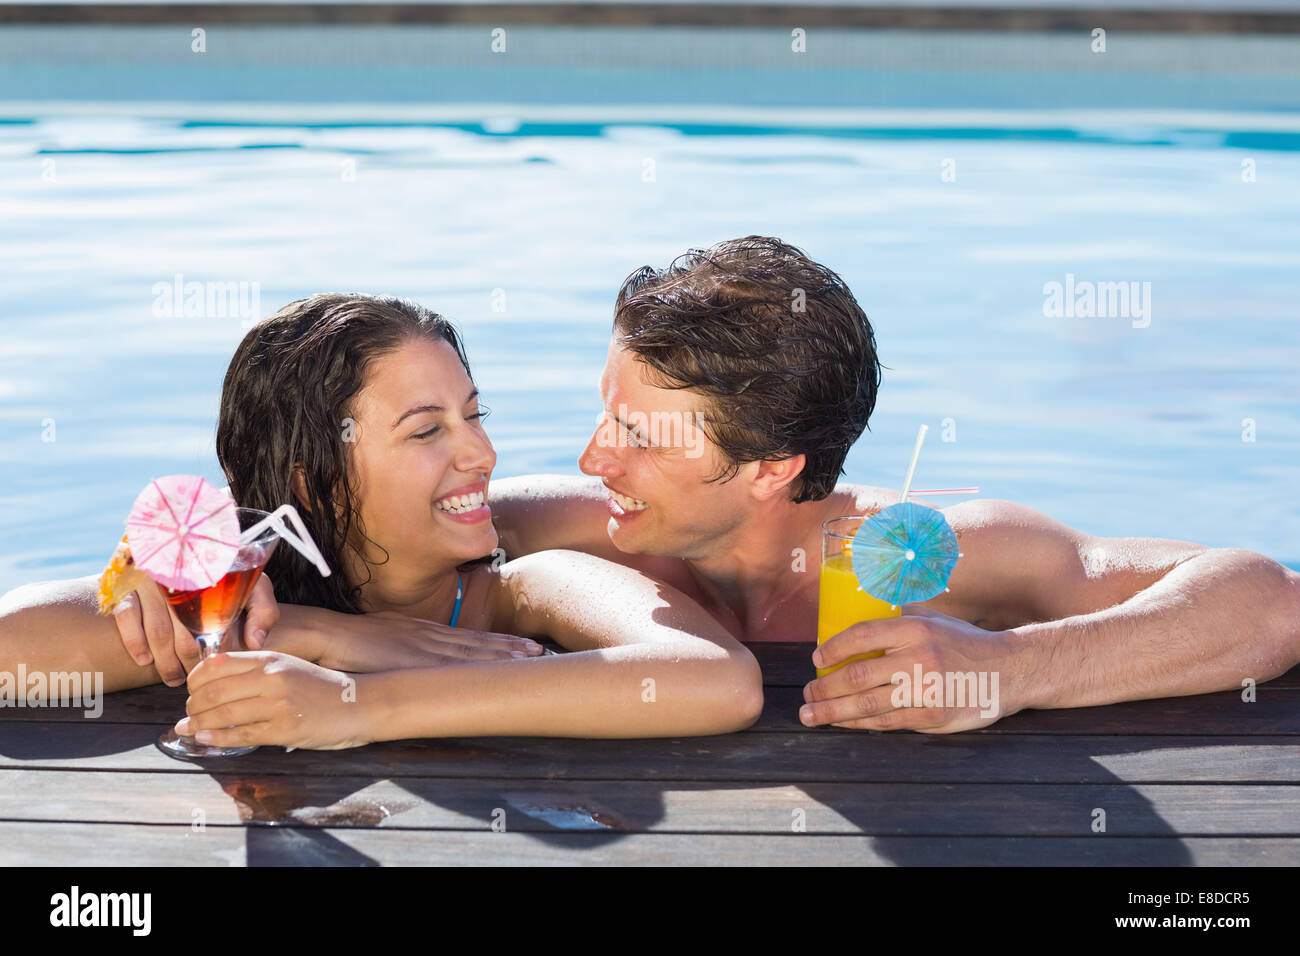 Allegro giovane con bevande in piscina Foto Stock